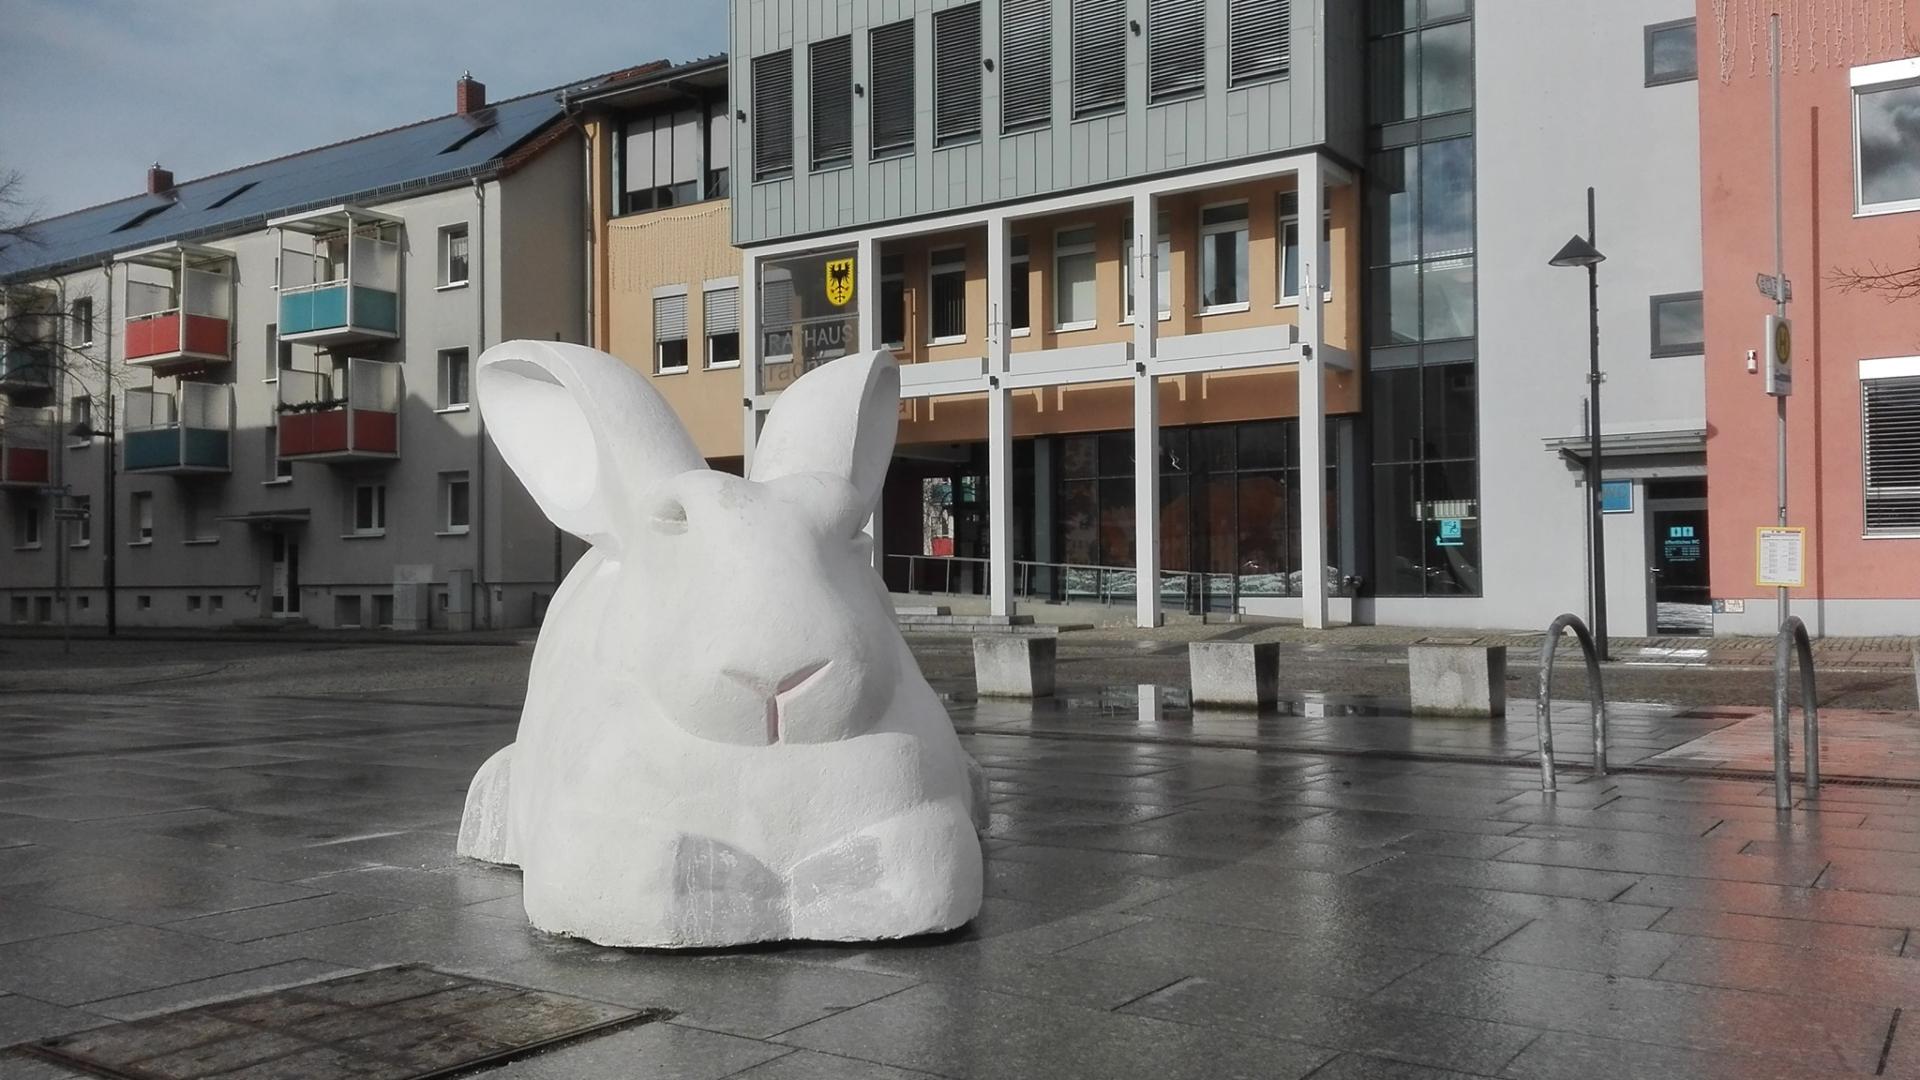 Die Rathausgalerie bot Anfang 2020 eine Gemeinschaftsausstellung unter dem Titel "Panorama". Der Weiße Hase stammt vom Töpchiner Künstler Harald Müller. Foto: Dörthe Ziemer